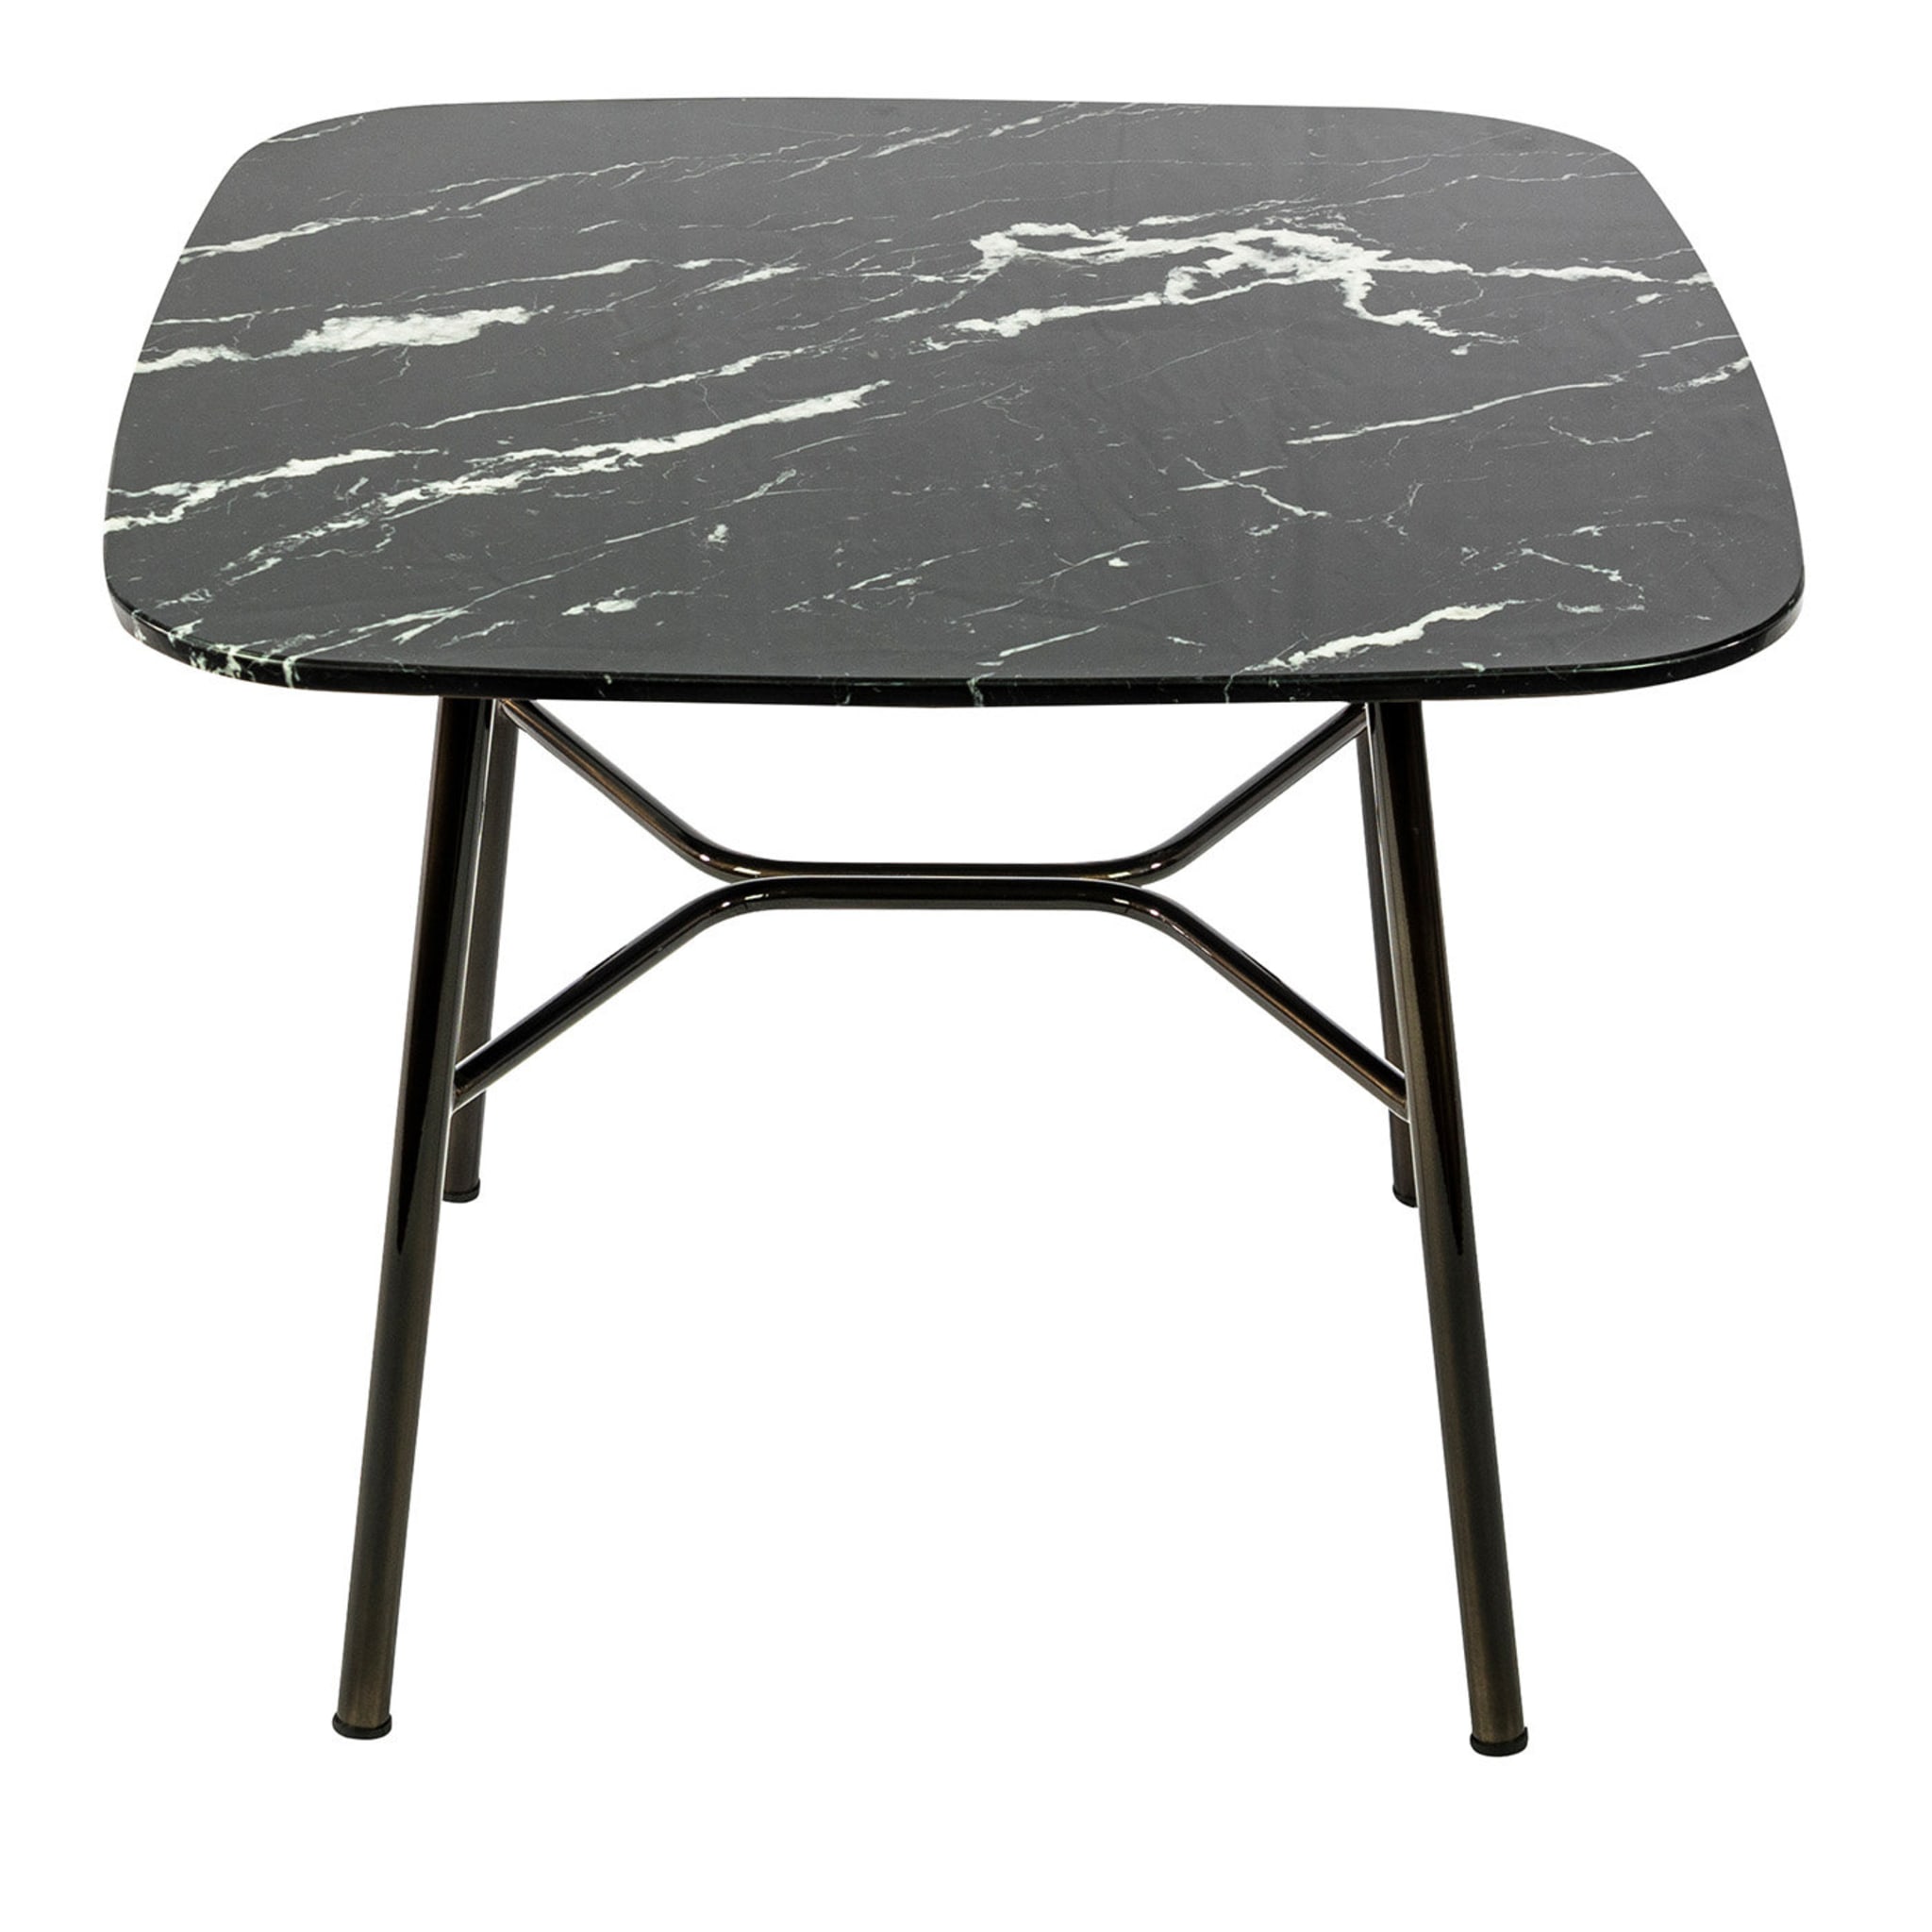 Table d'appoint carrée Yuki avec plateau en marquinia noir # 1 par Ep Studio - Vue principale